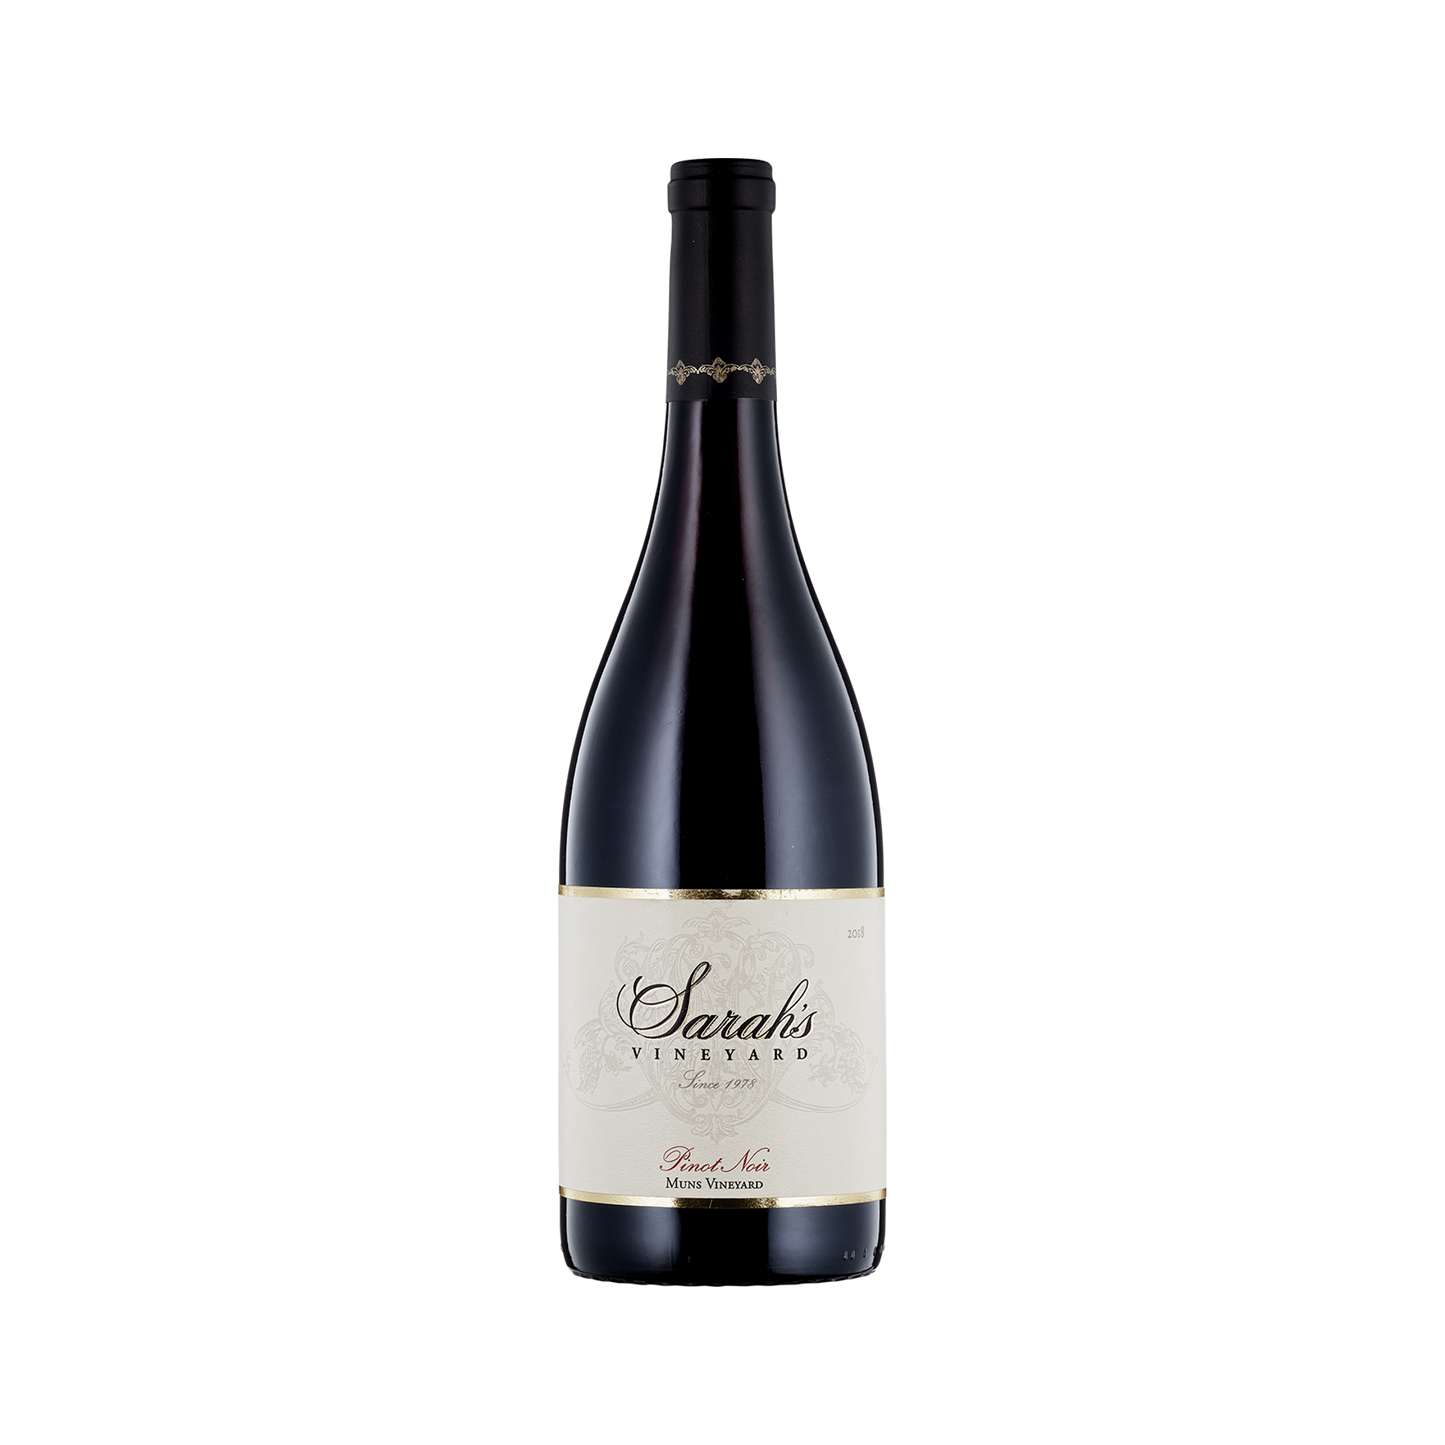 A bottle of Sarah's Vineyard 2018 Pinot Noir